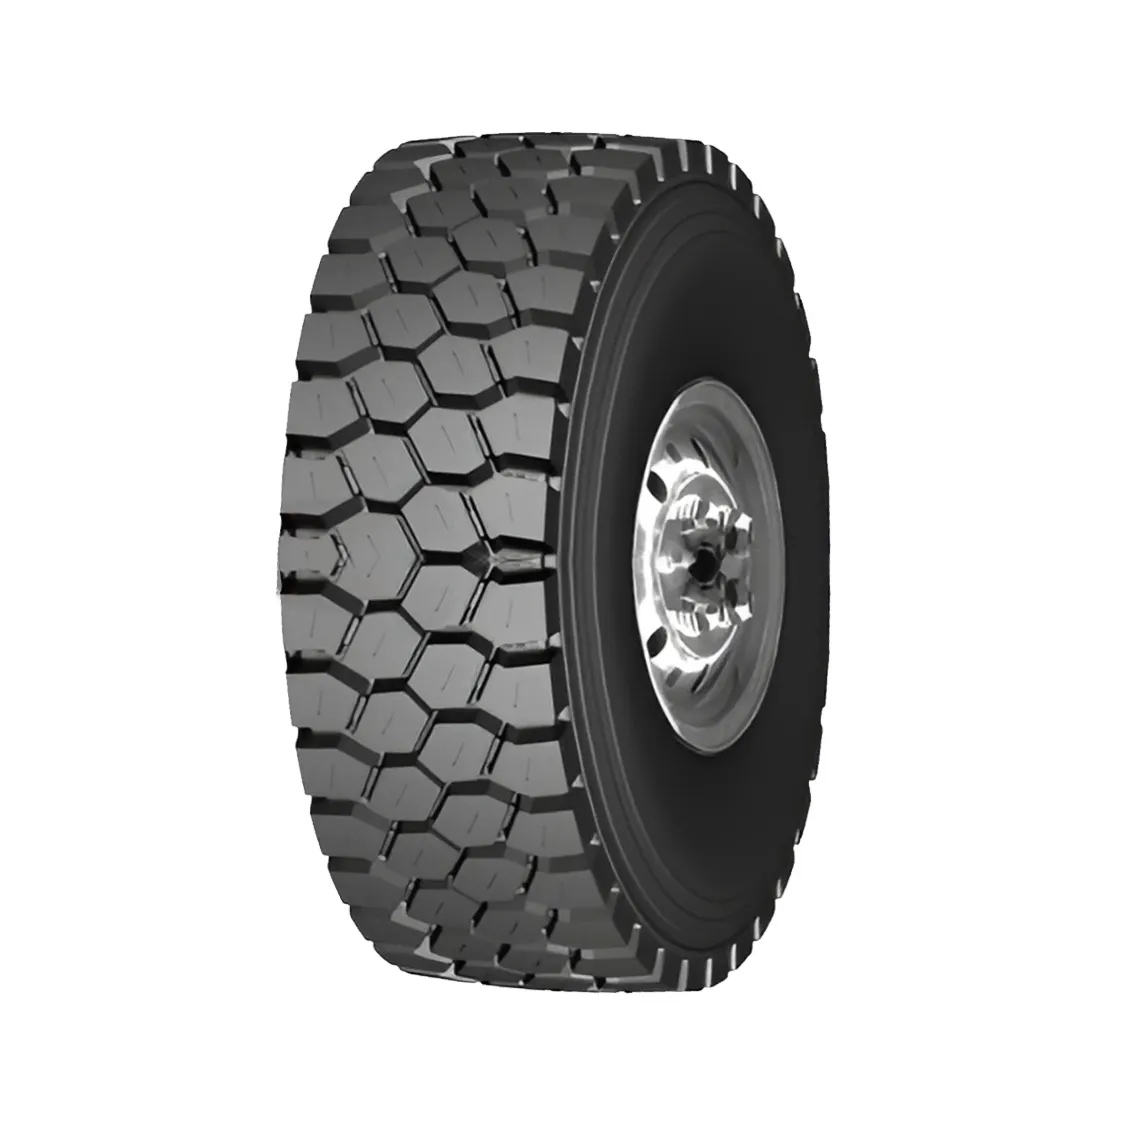 Neumáticos camiones DIST medianos y cortos 13 12 11,00 9 8,25 7,5 7 6,5 R22.5 R20 R16, resistente a la carga, resistente a pinchazos, duradero